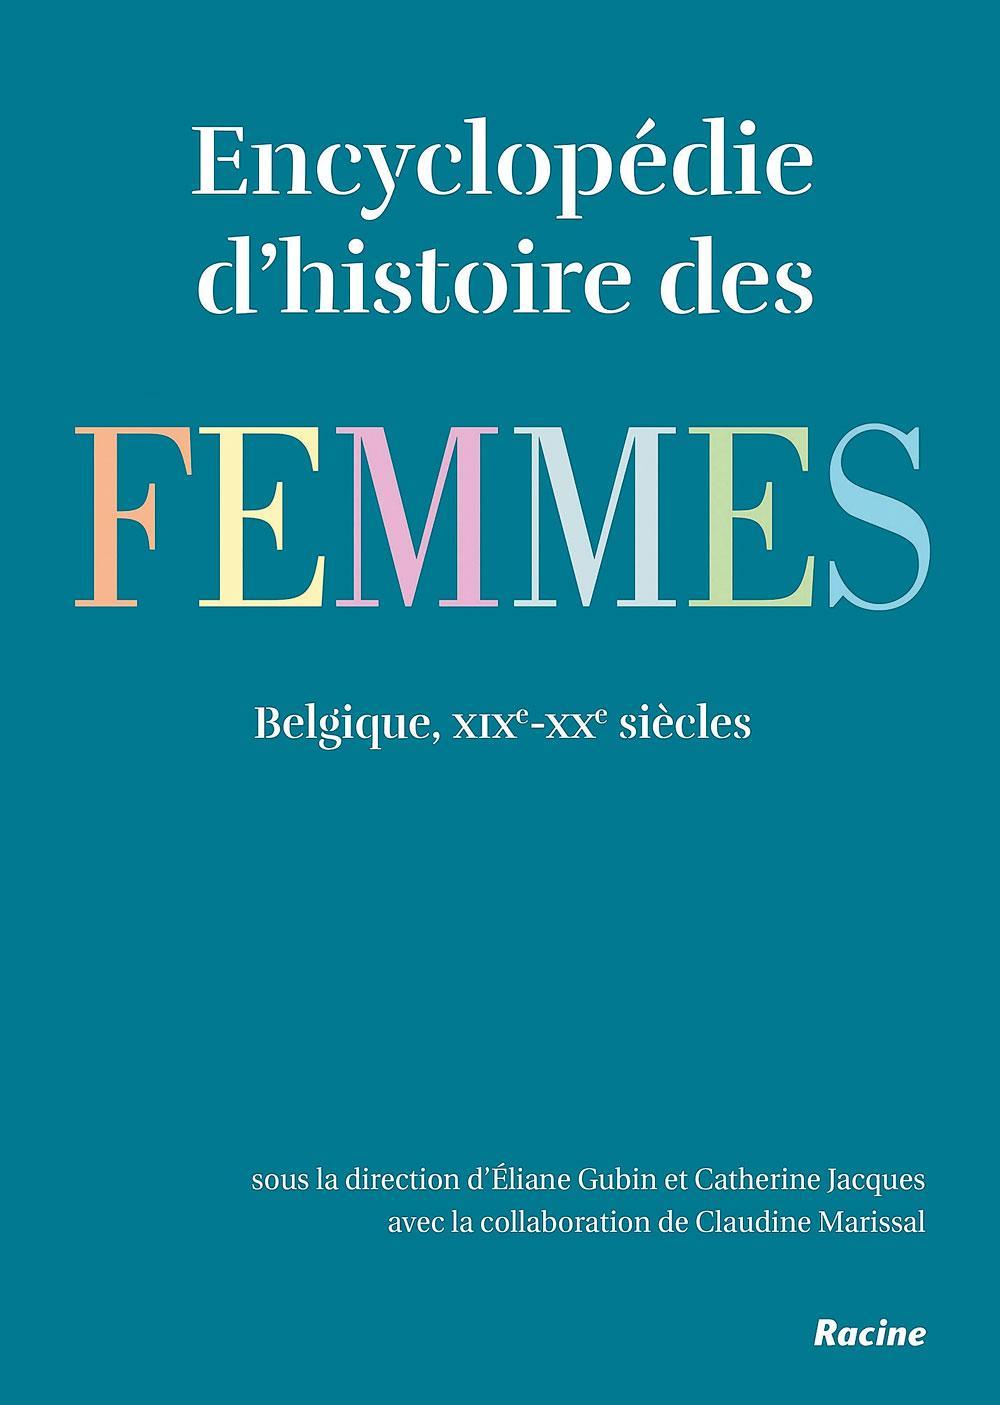 Encyclopédie d'histoire des femmes. Belgique, xixe-xxe siècles, sous la direction d'Eliane Gubin et de Catherine Jacques, Racine, 655 p.